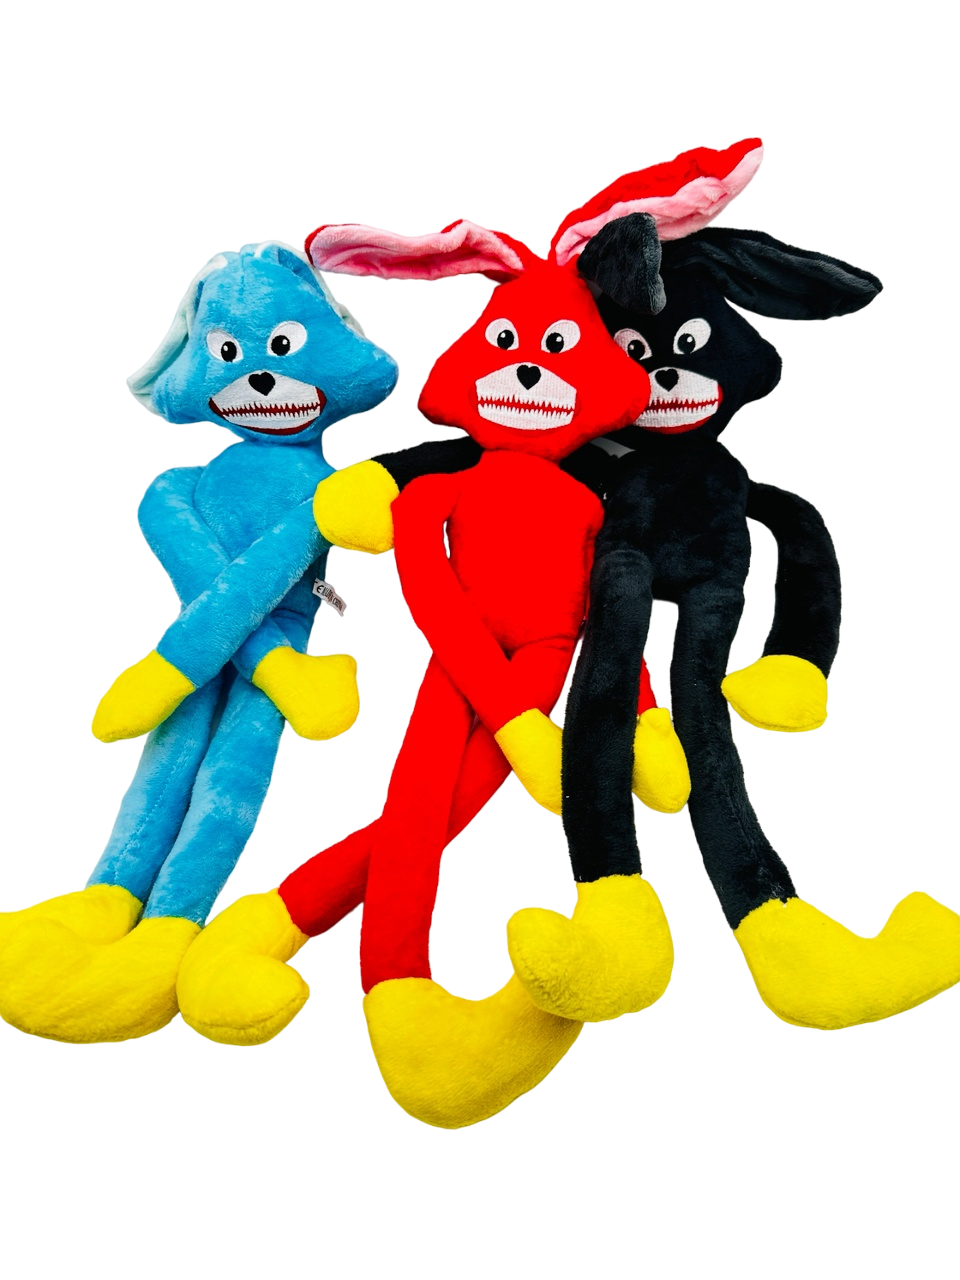 Мягкие игрушки 3 Веселых Зайца голубой, красный, черный конни спасает пасхального зайца